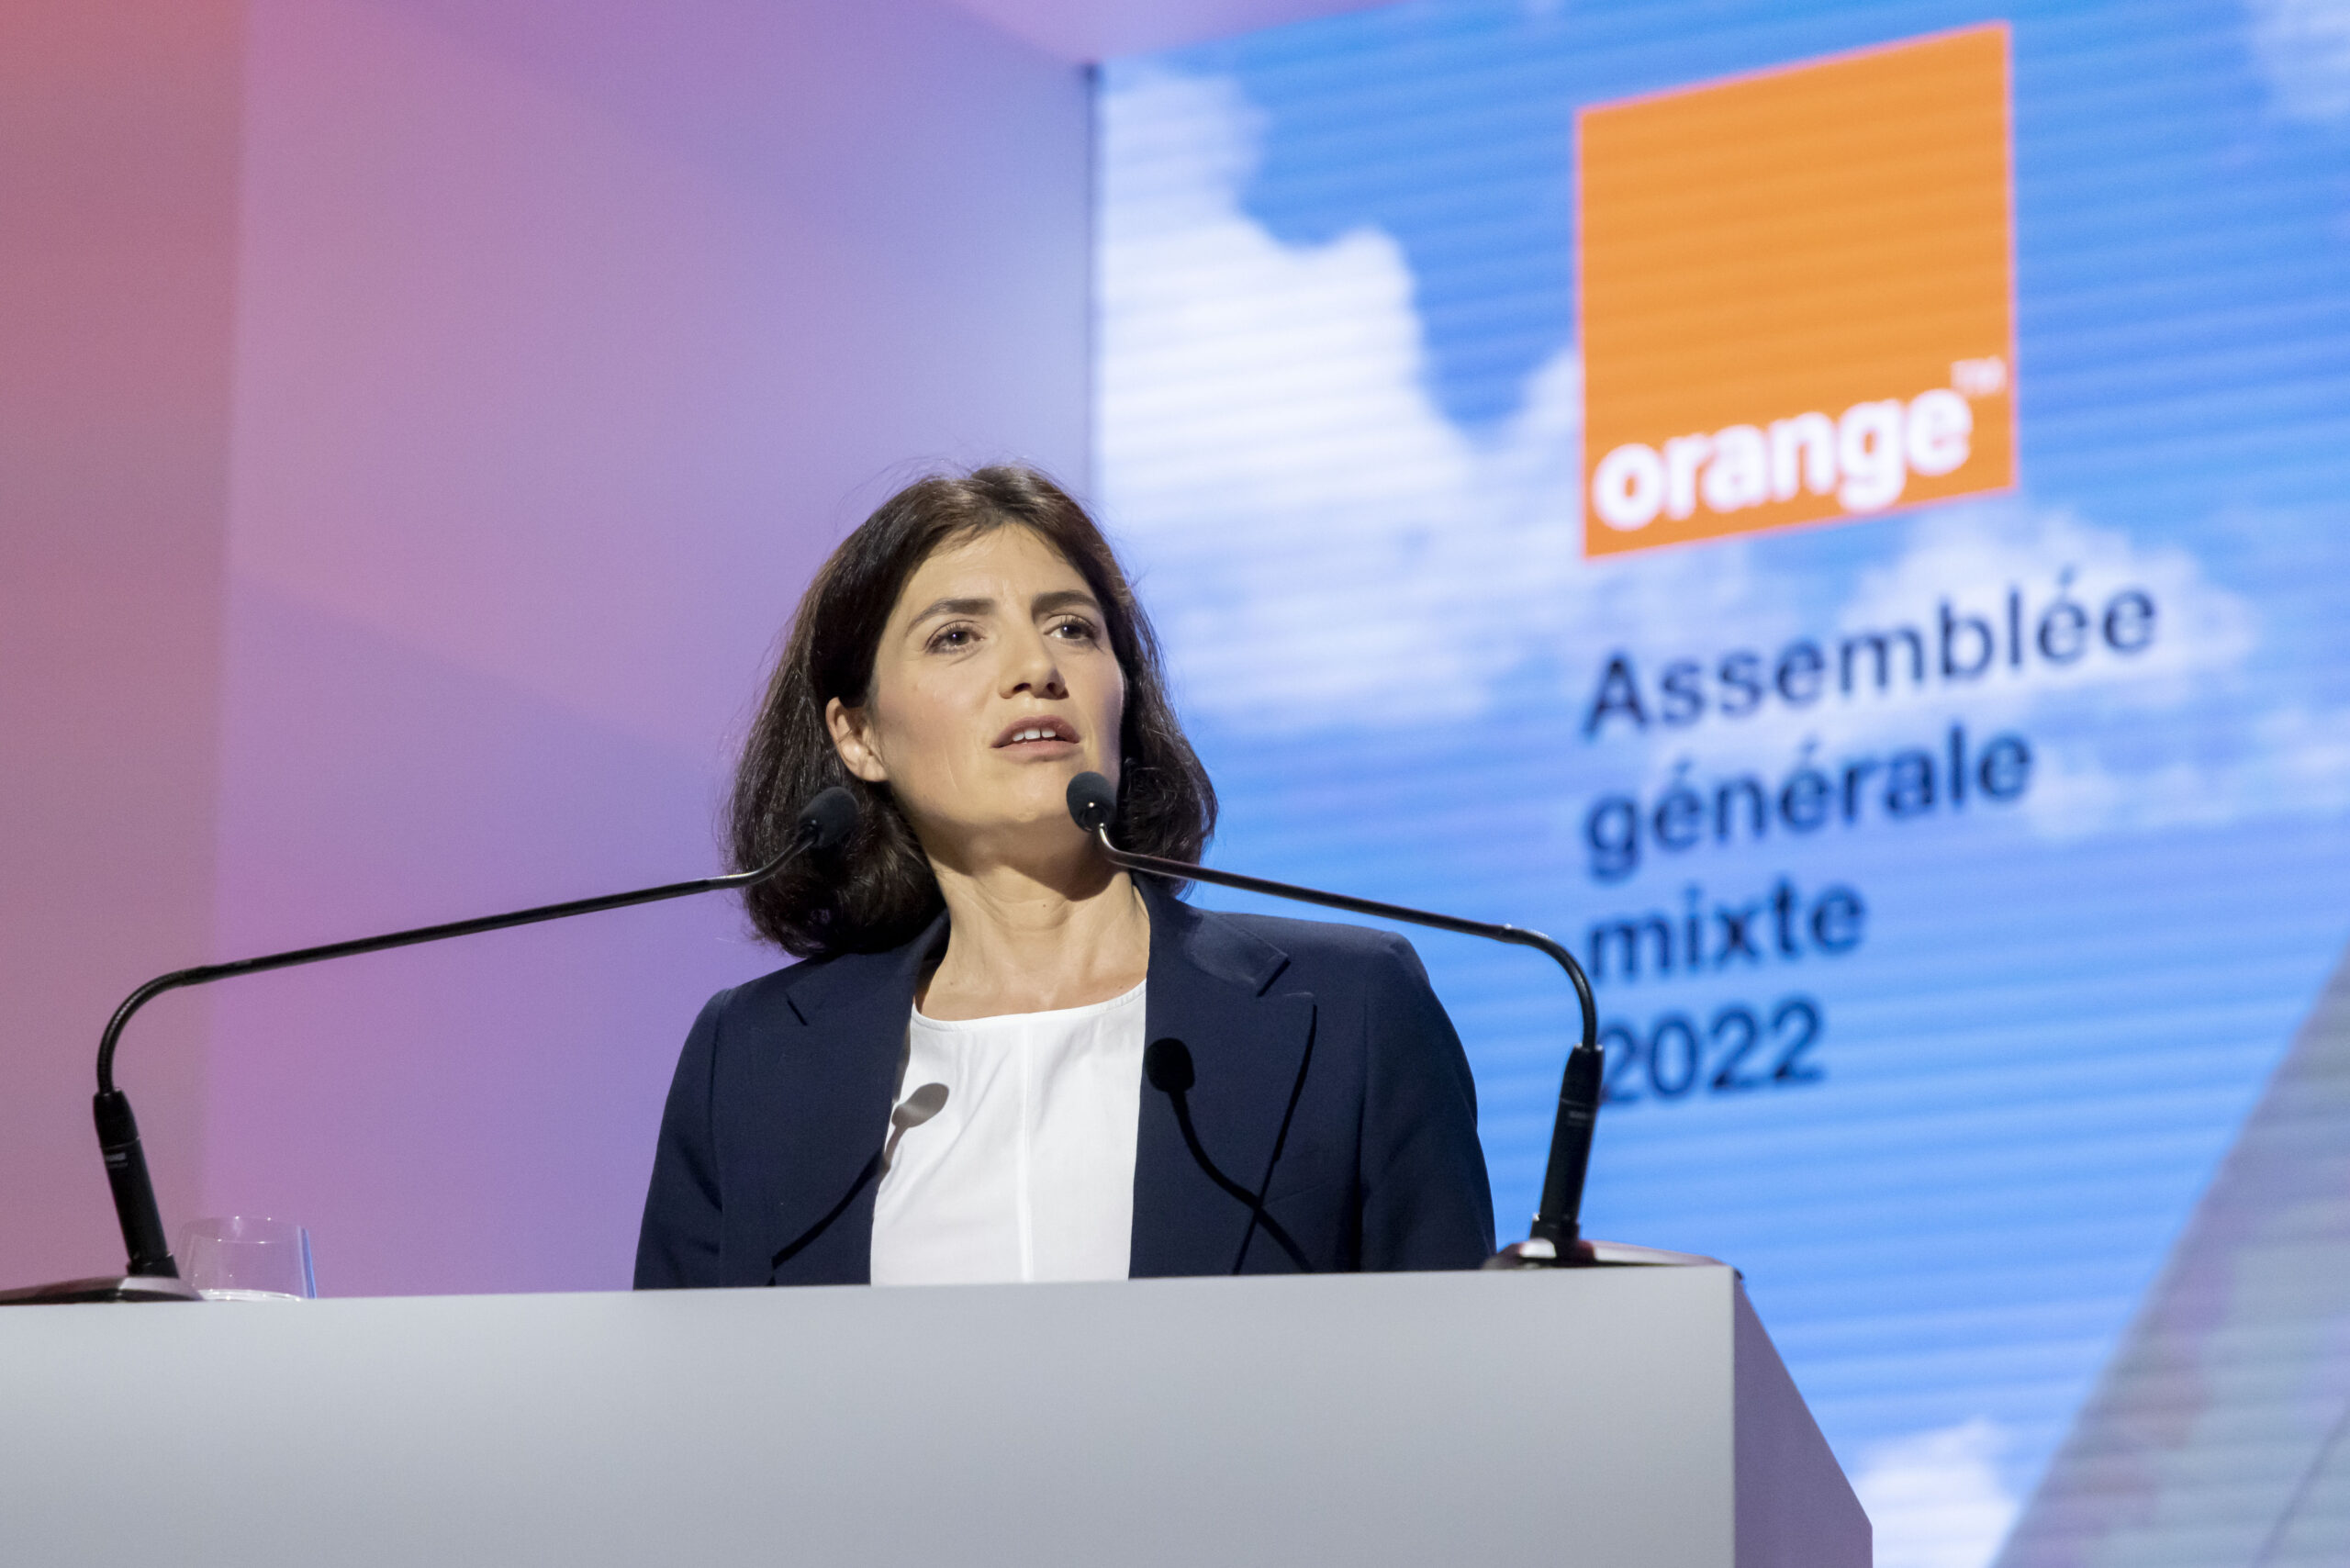 Orange prevé que Bruselas extienda el análisis de la fusión con MásMóvil a una segunda fase